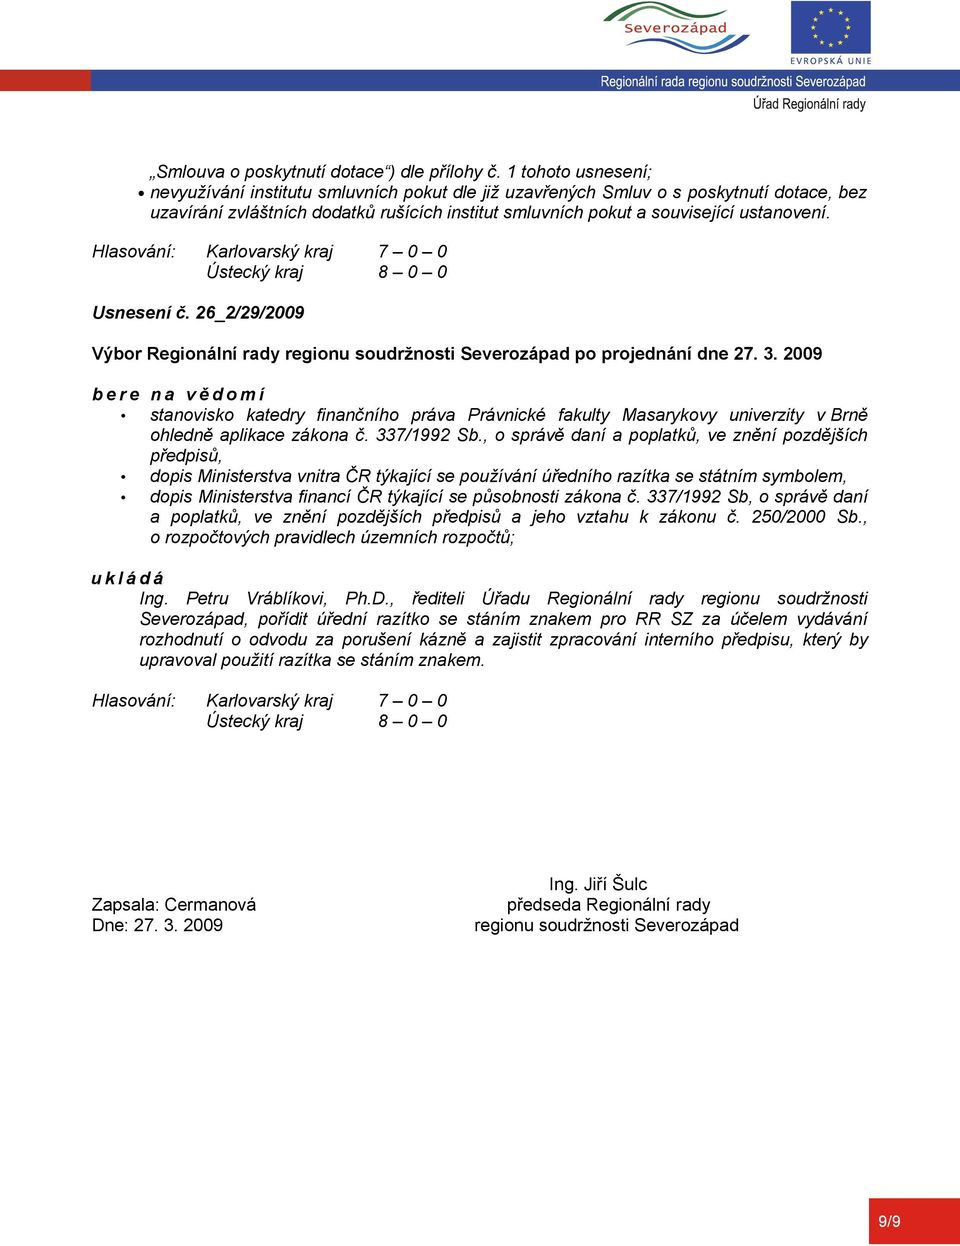 Usnesení č. 26_2/29/2009 stanovisko katedry finančního práva Právnické fakulty Masarykovy univerzity v Brně ohledně aplikace zákona č. 337/1992 Sb.